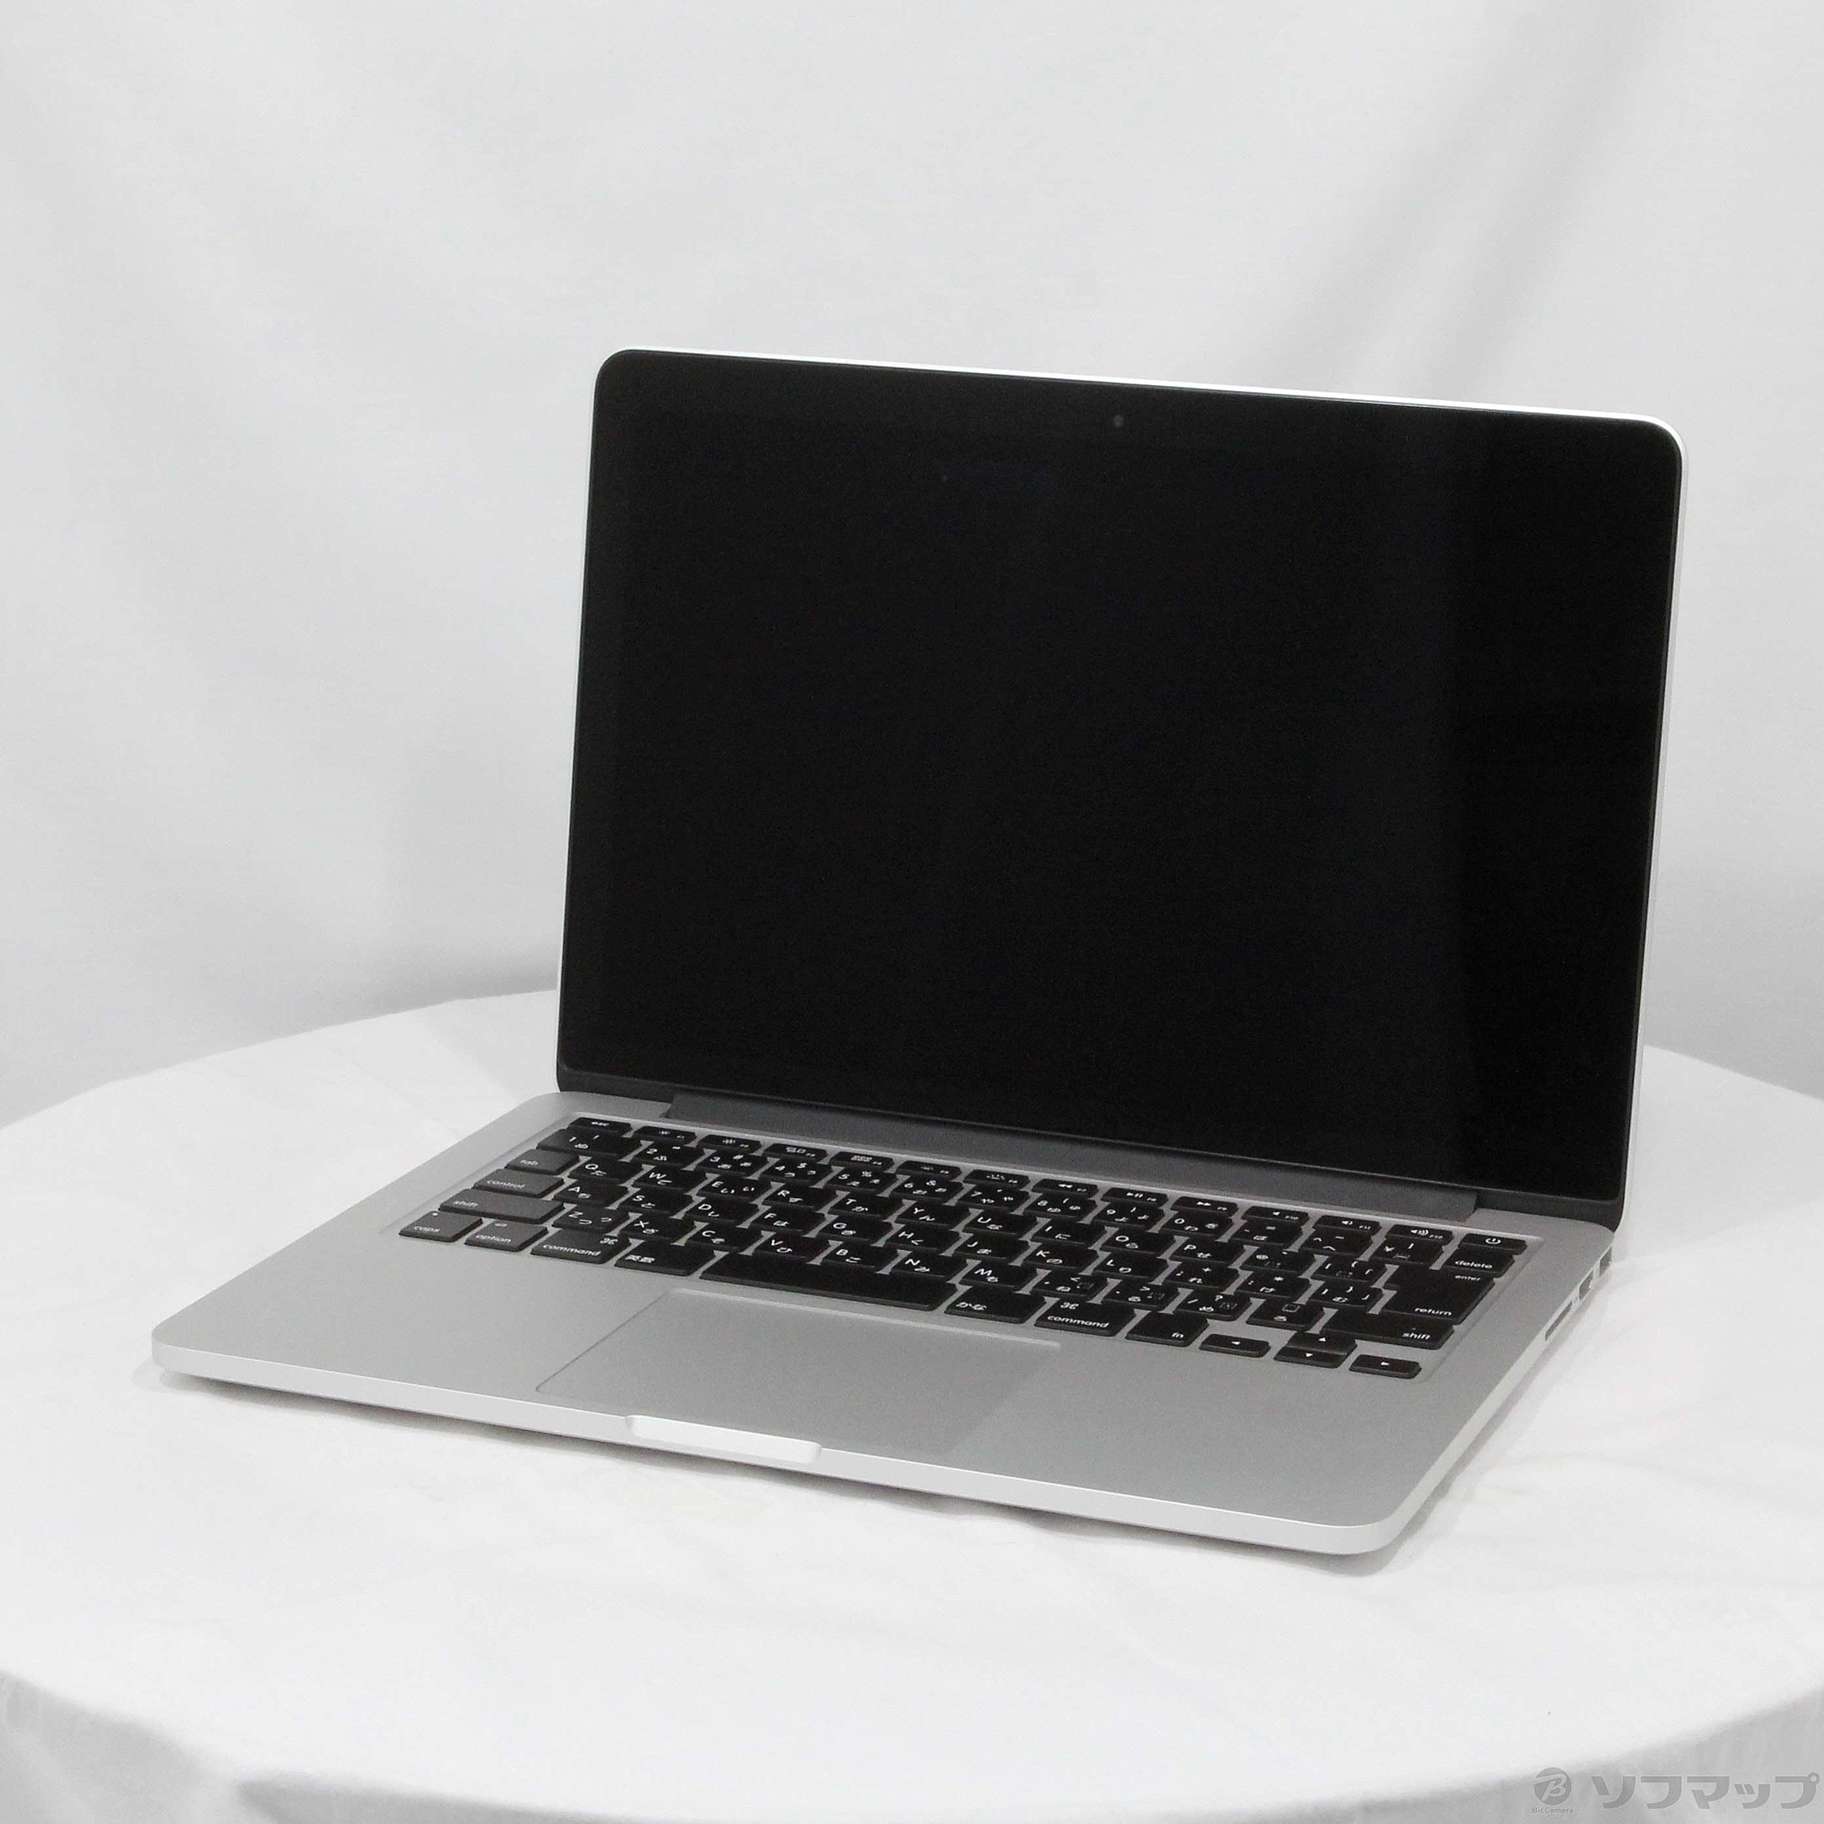 APPLE MacBook Pro Early 2015 MF839J/A